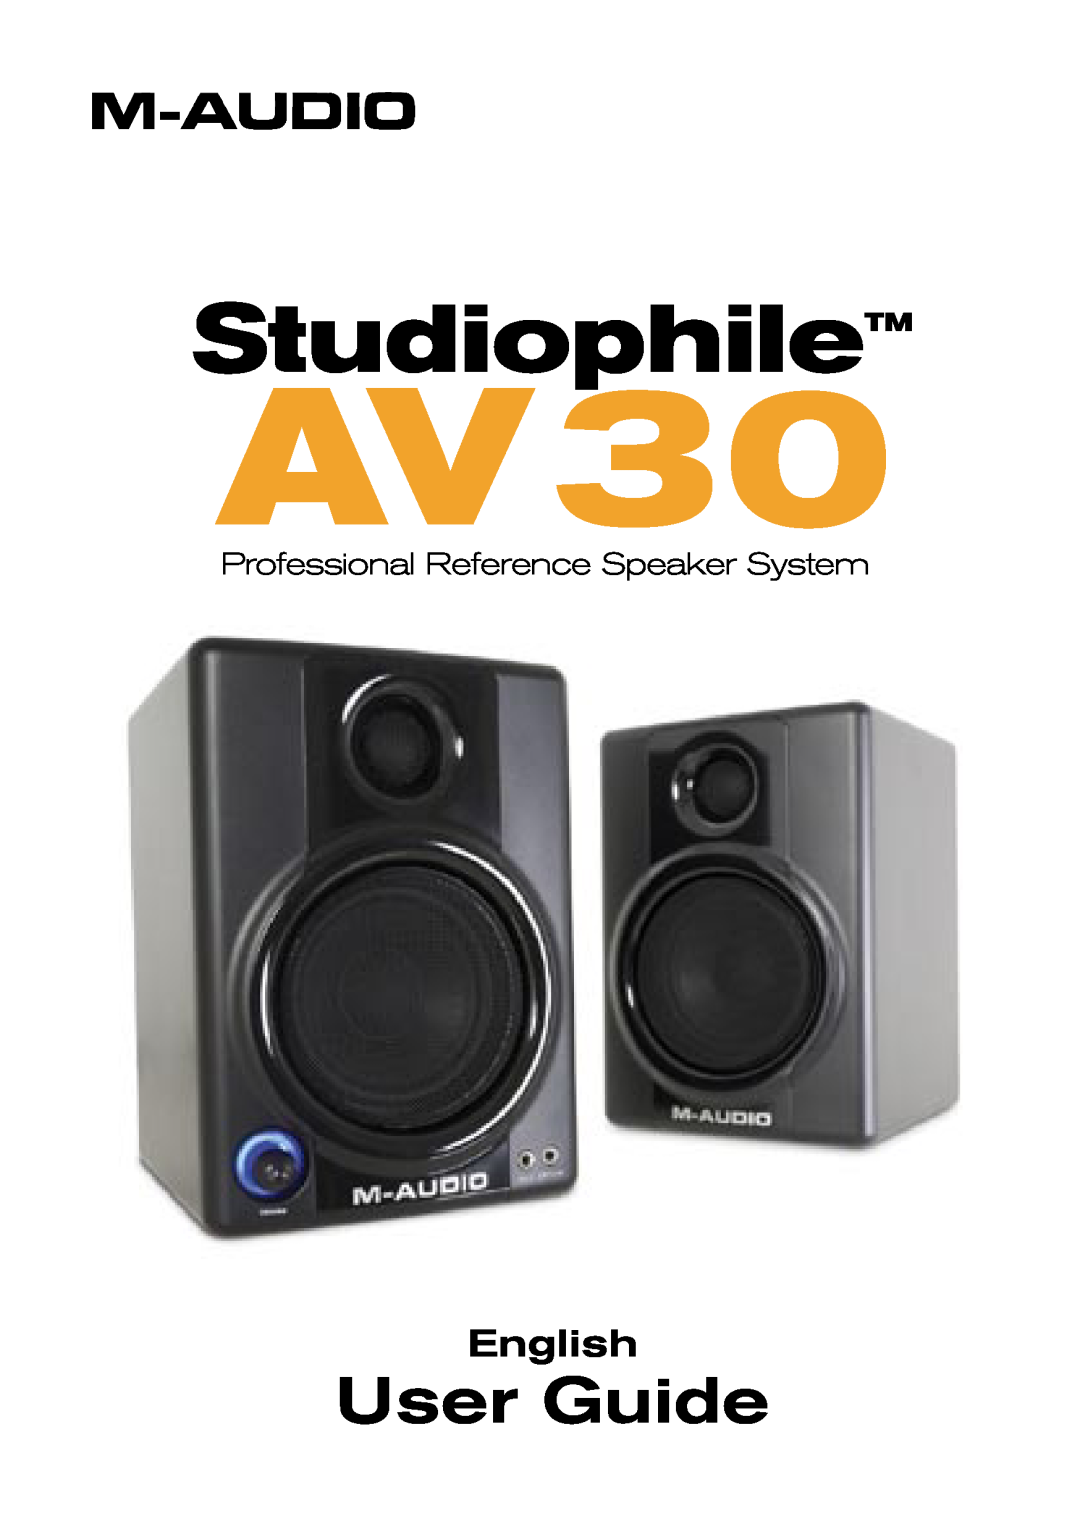 M-Audio AV 30 manual AV30, StudiophileTM, User Guide, English, Professional Reference Speaker System 